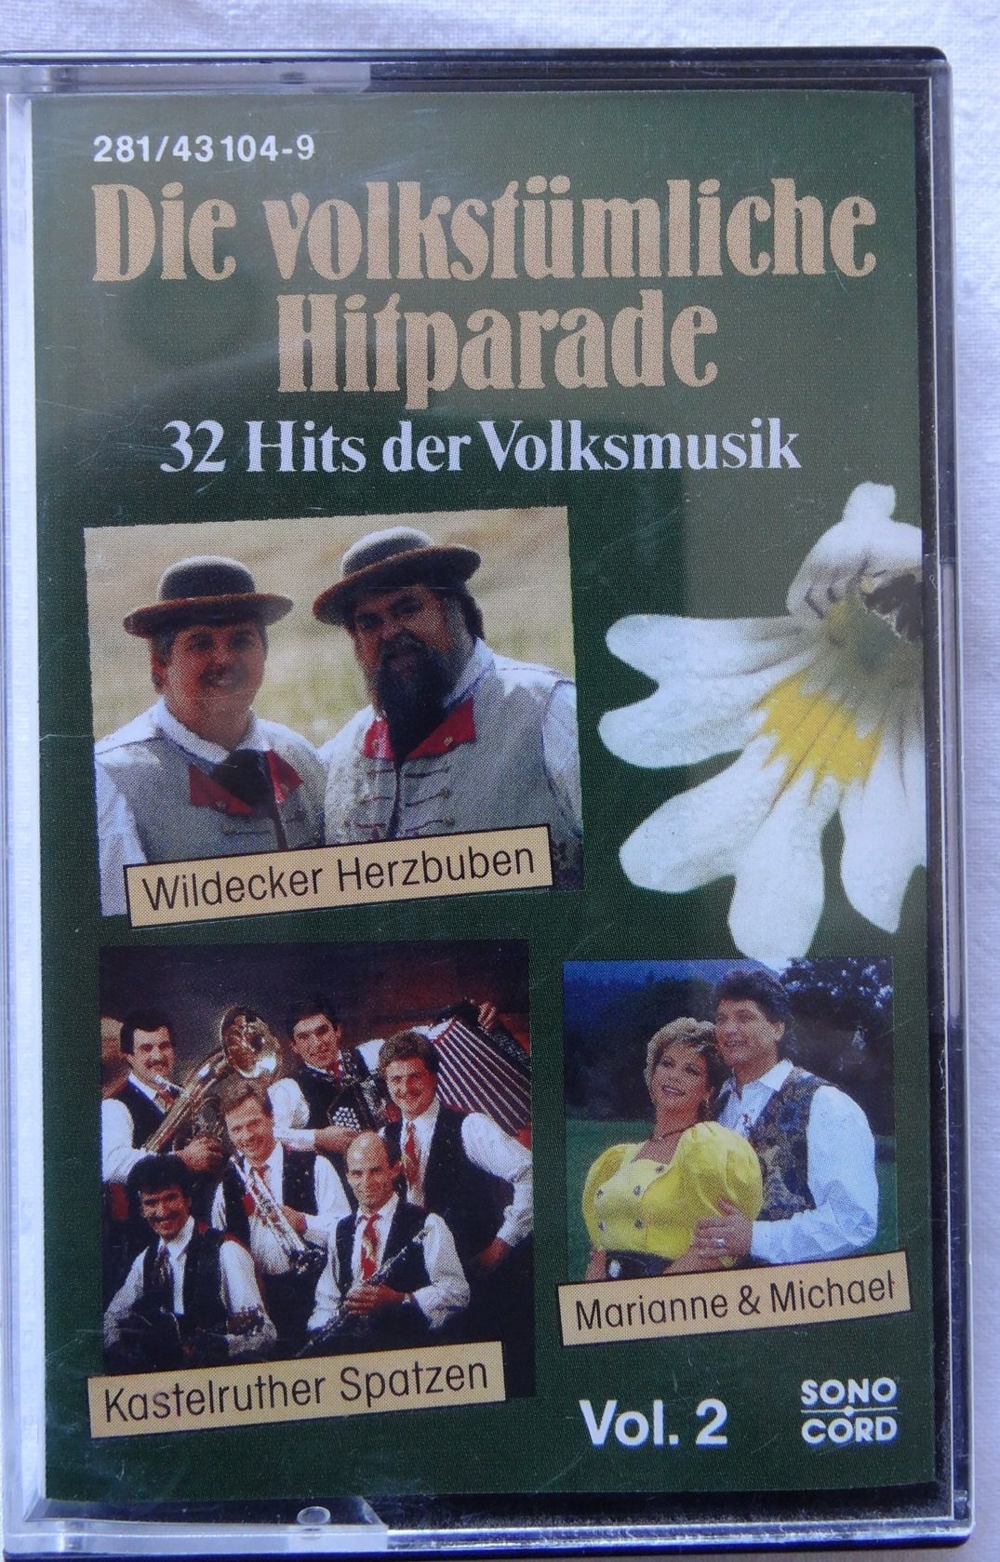 MC Die volkstümliche Hitparade 32 Hits der Volksmusik Vol.2 Sonocord 281/43104-9 1991 Musikkassette